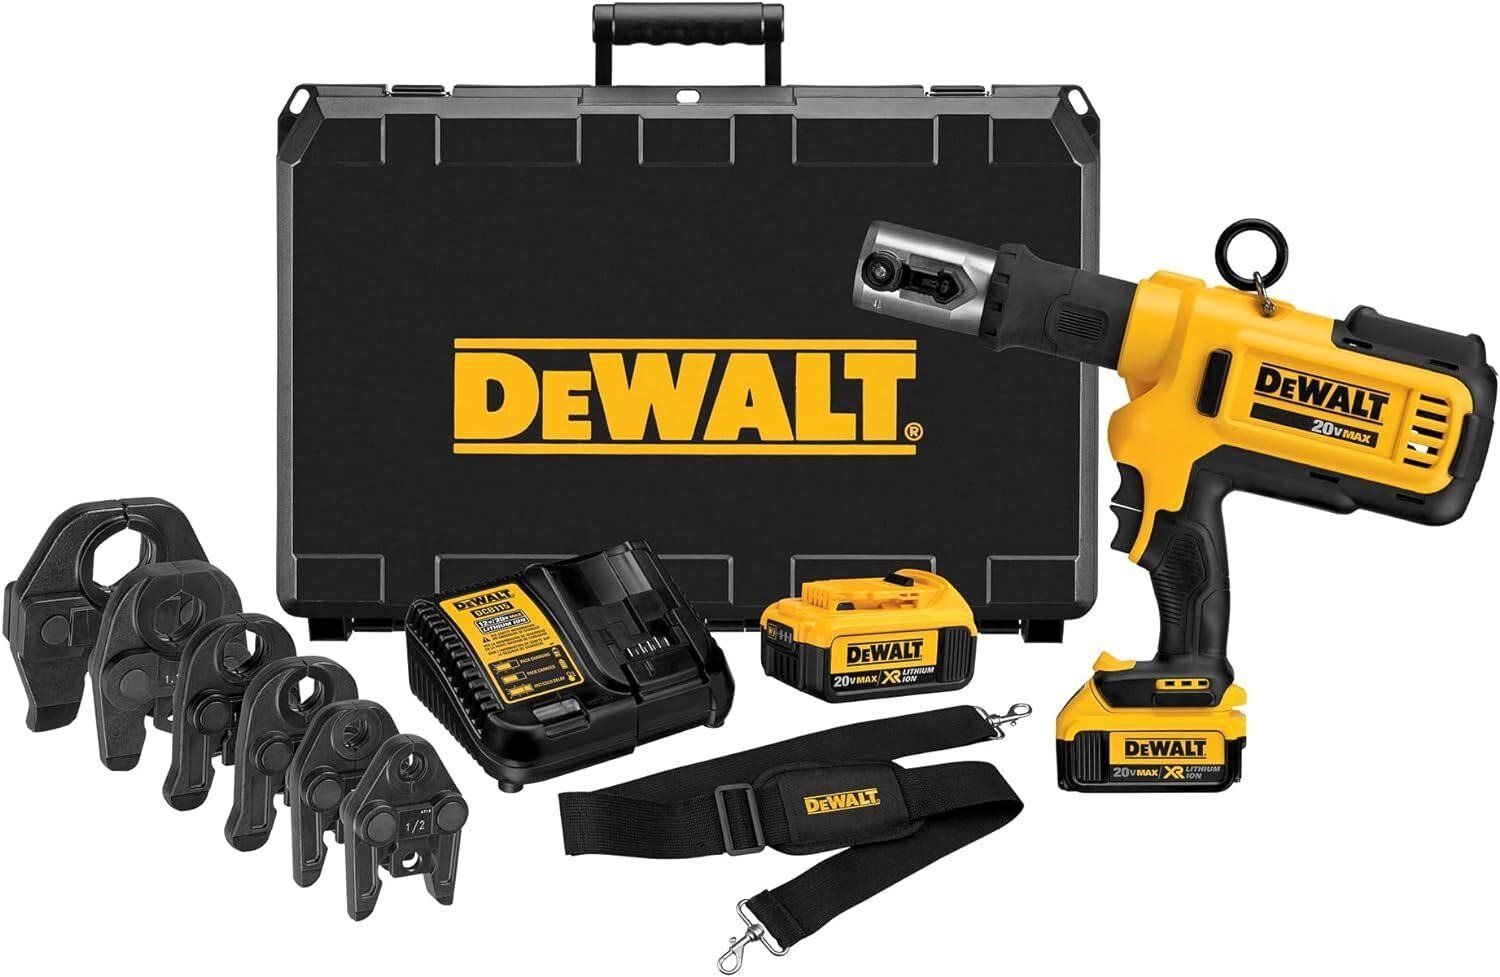 DEWALT 20V MAX Pipe Pressing Tool Kit (DCE200M2K)